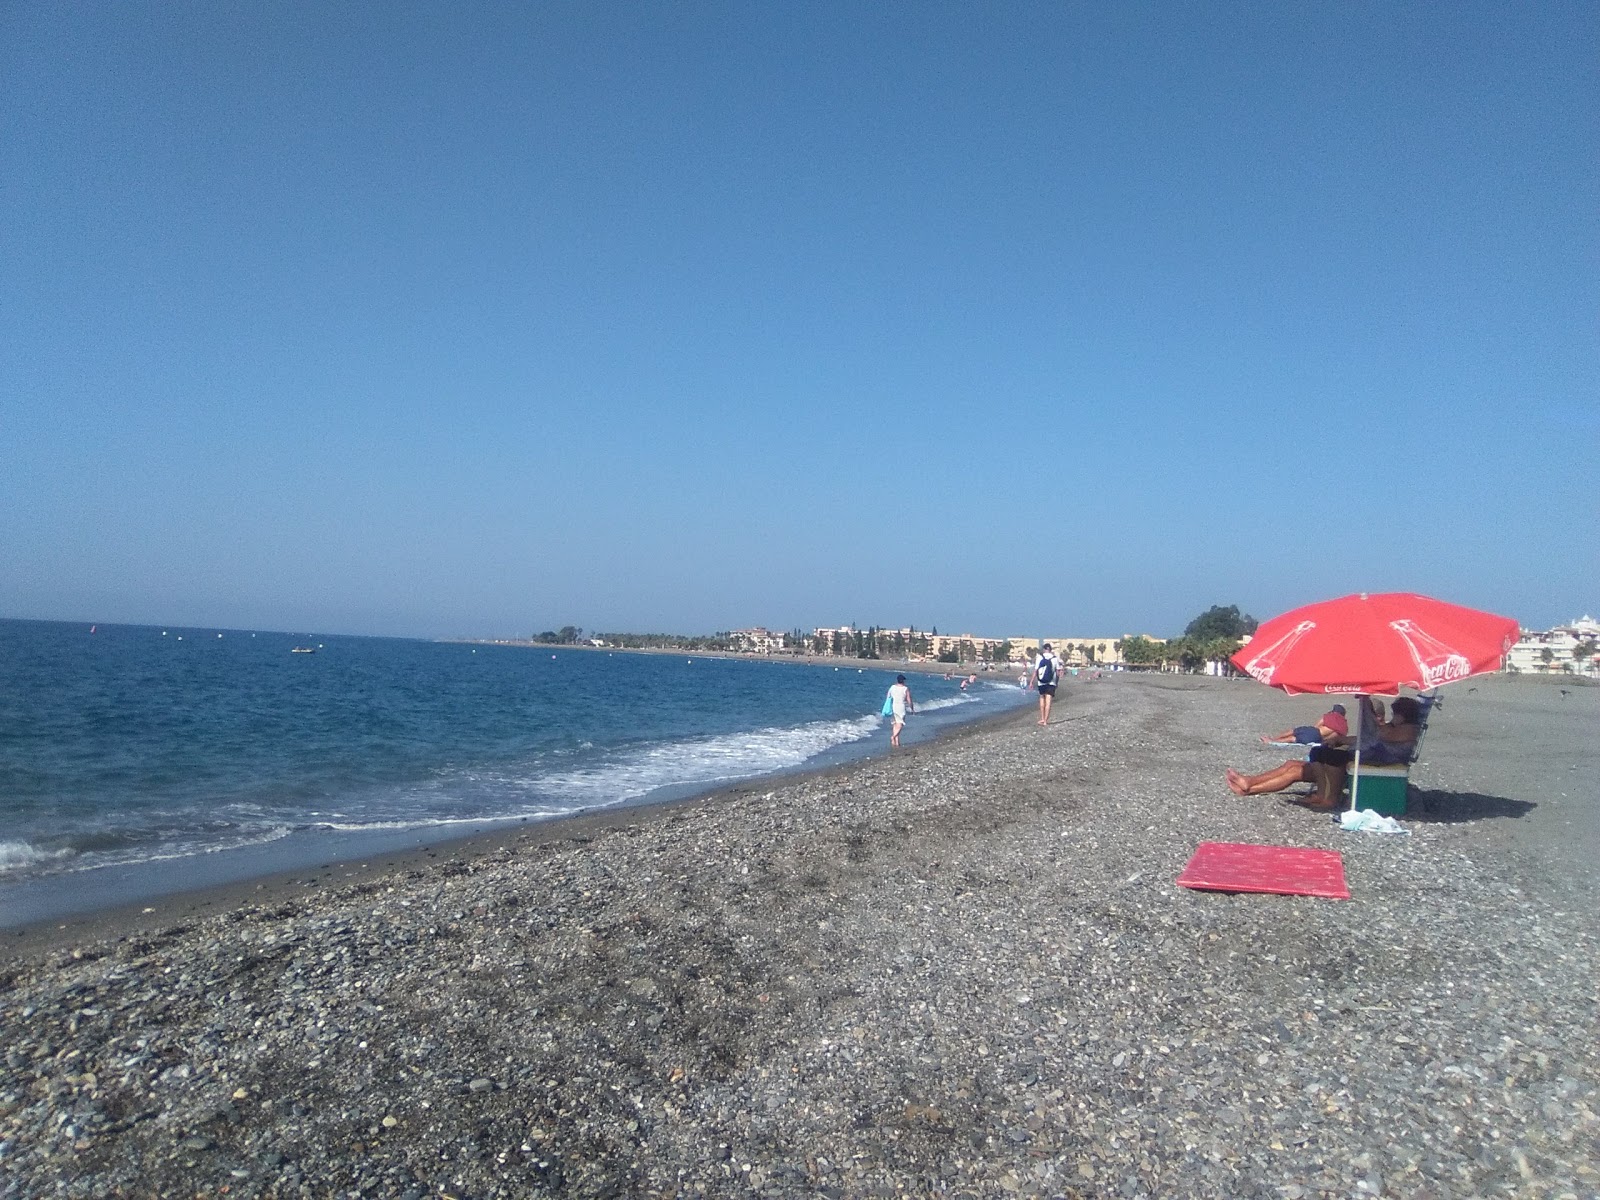 Fotografie cu Plaja Motril (Plaja Granada) cu o suprafață de nisip de coajă gri